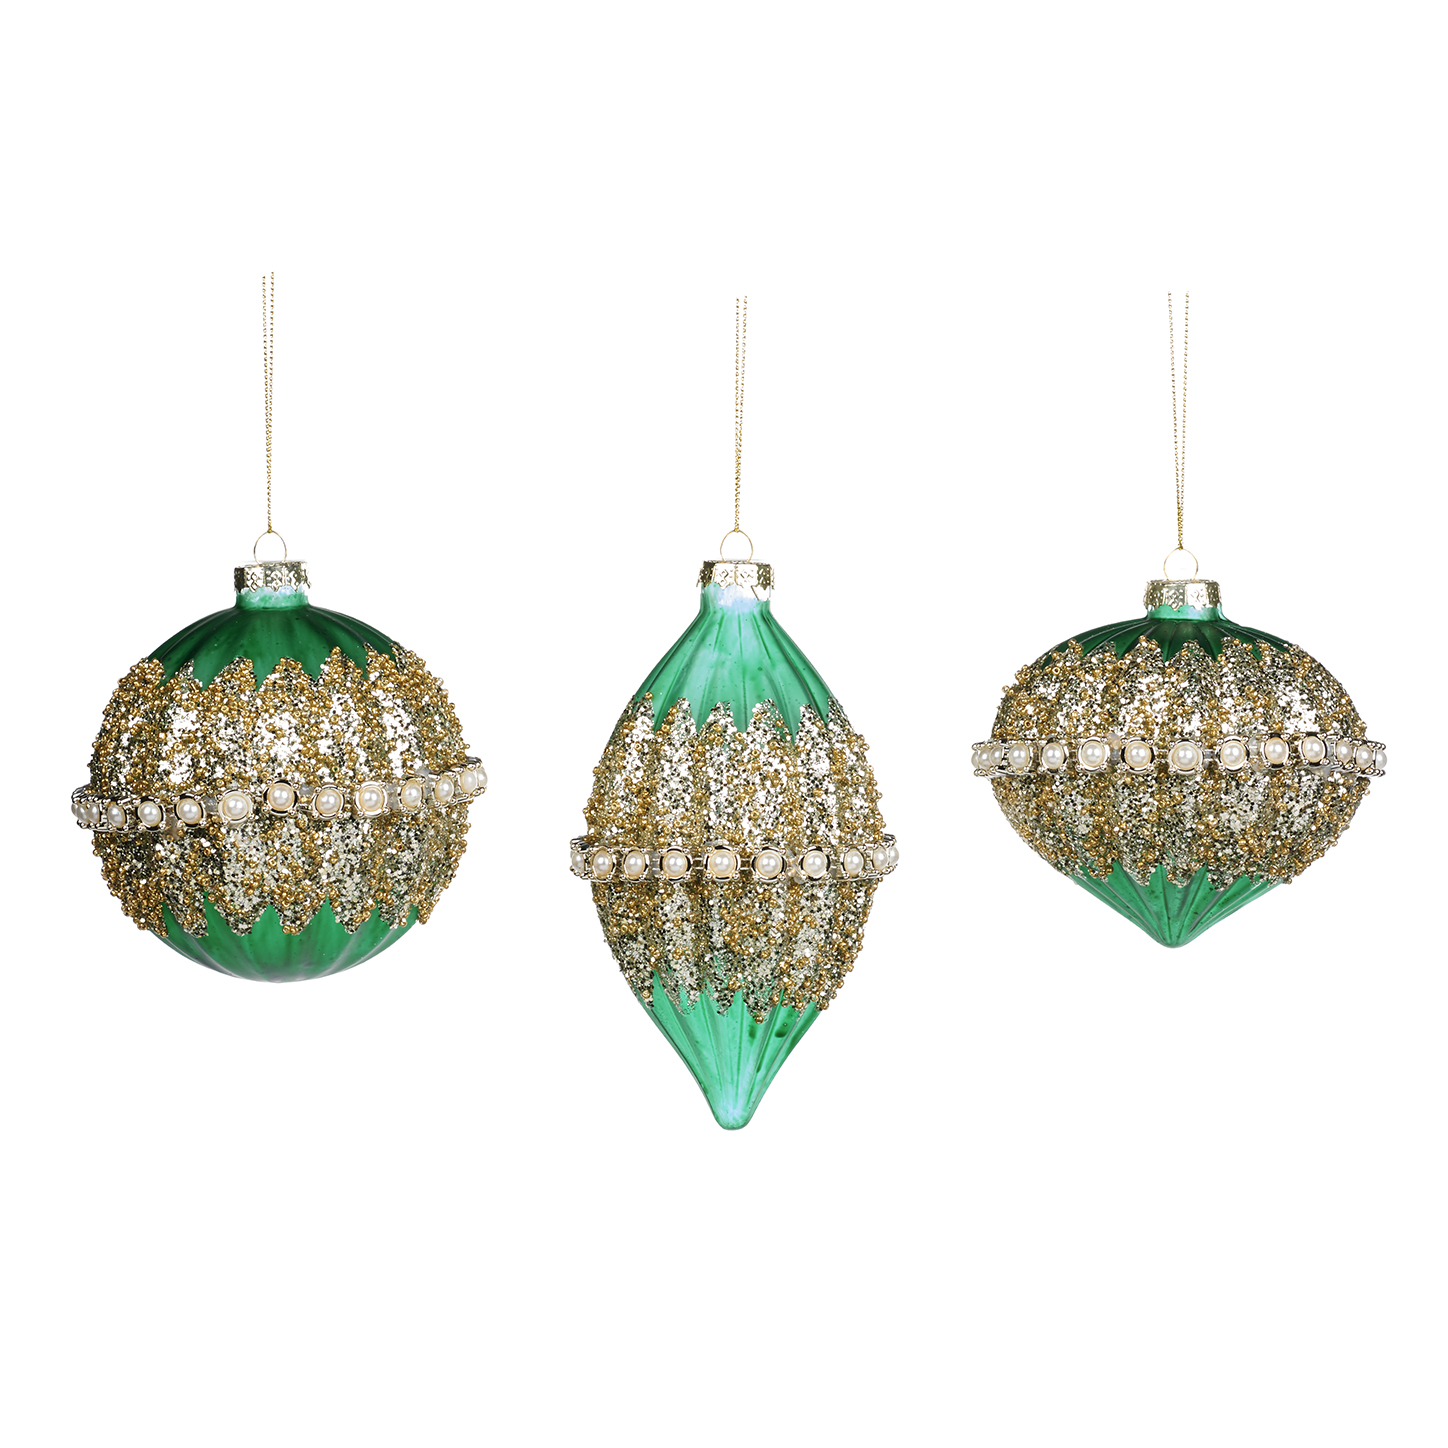 Pallina natalizia in vetro verde con decoro a rilievo oro e perle - 3 modelli ass - H.10 cm - Collezione 2022 - Goodwill